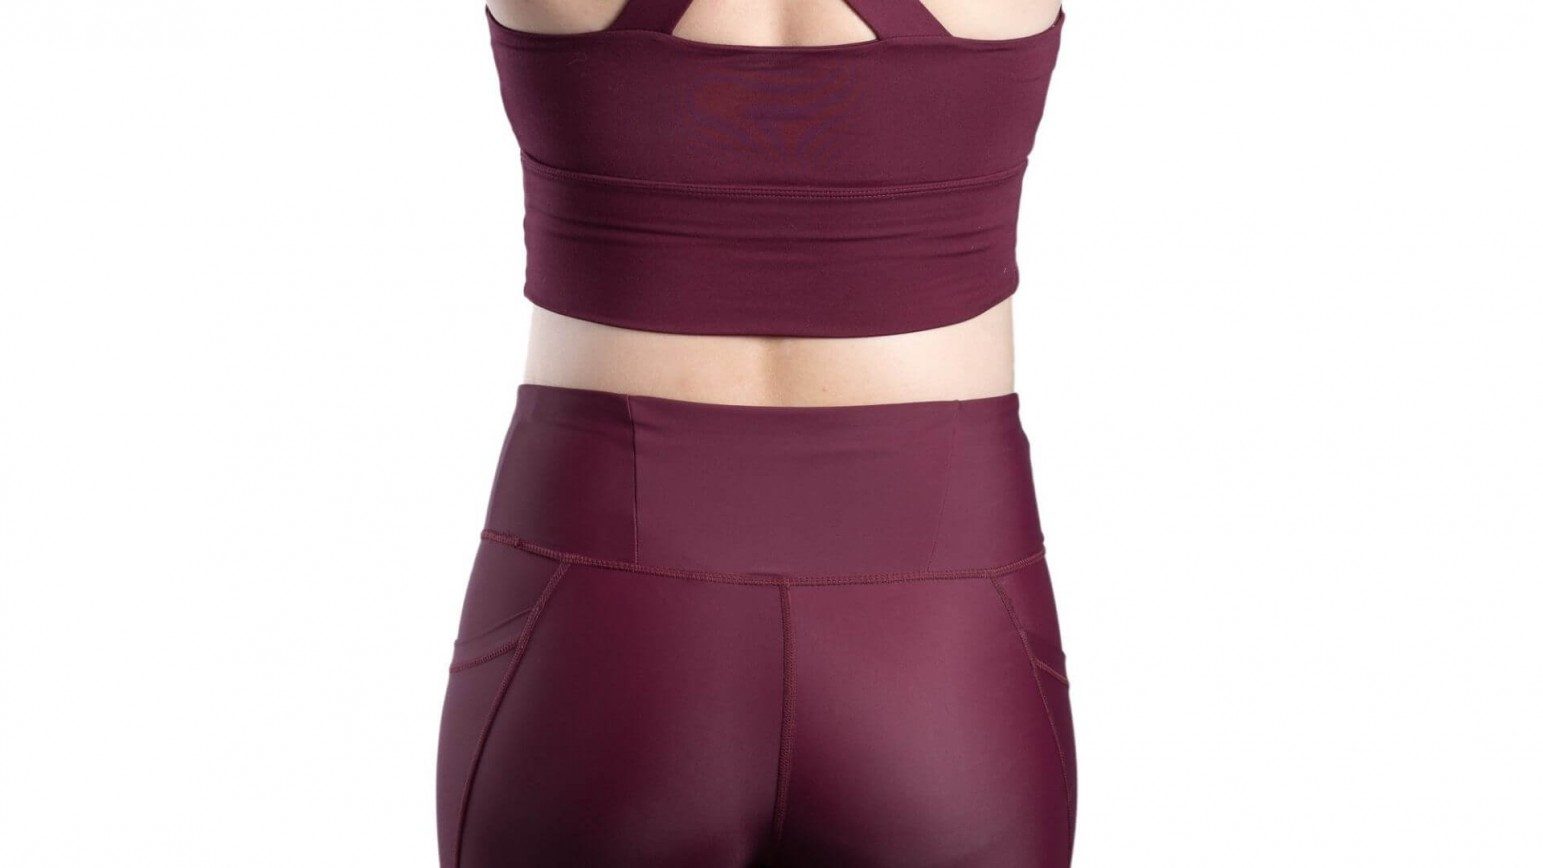 A woman's lower back wearing purple maroon activewear